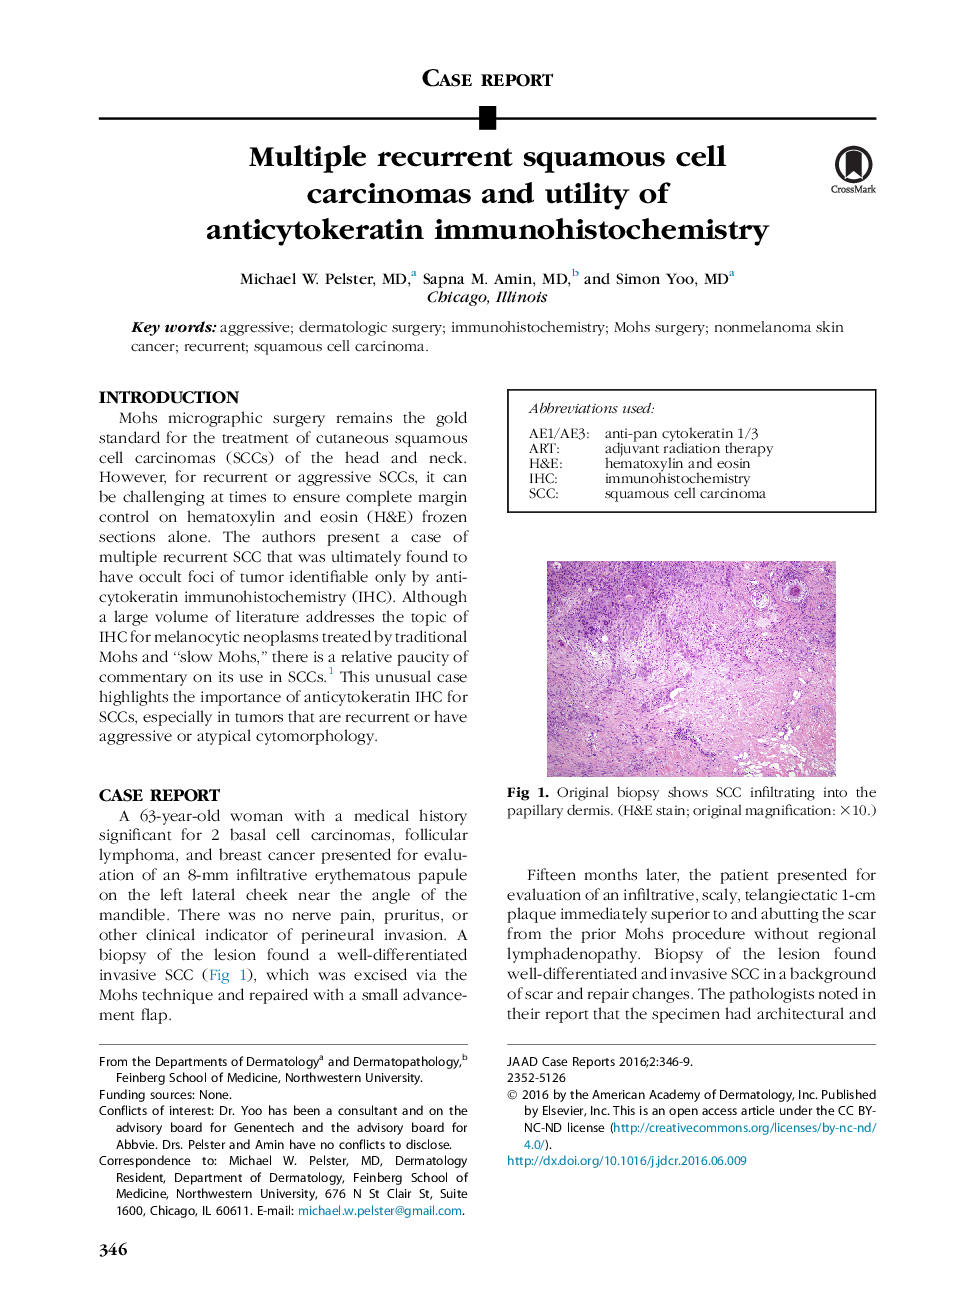 کارسینوم سلول های شکاری چندگانه و استفاده از آنتی سیتوکراتین ایمونوهیستوشیمی 